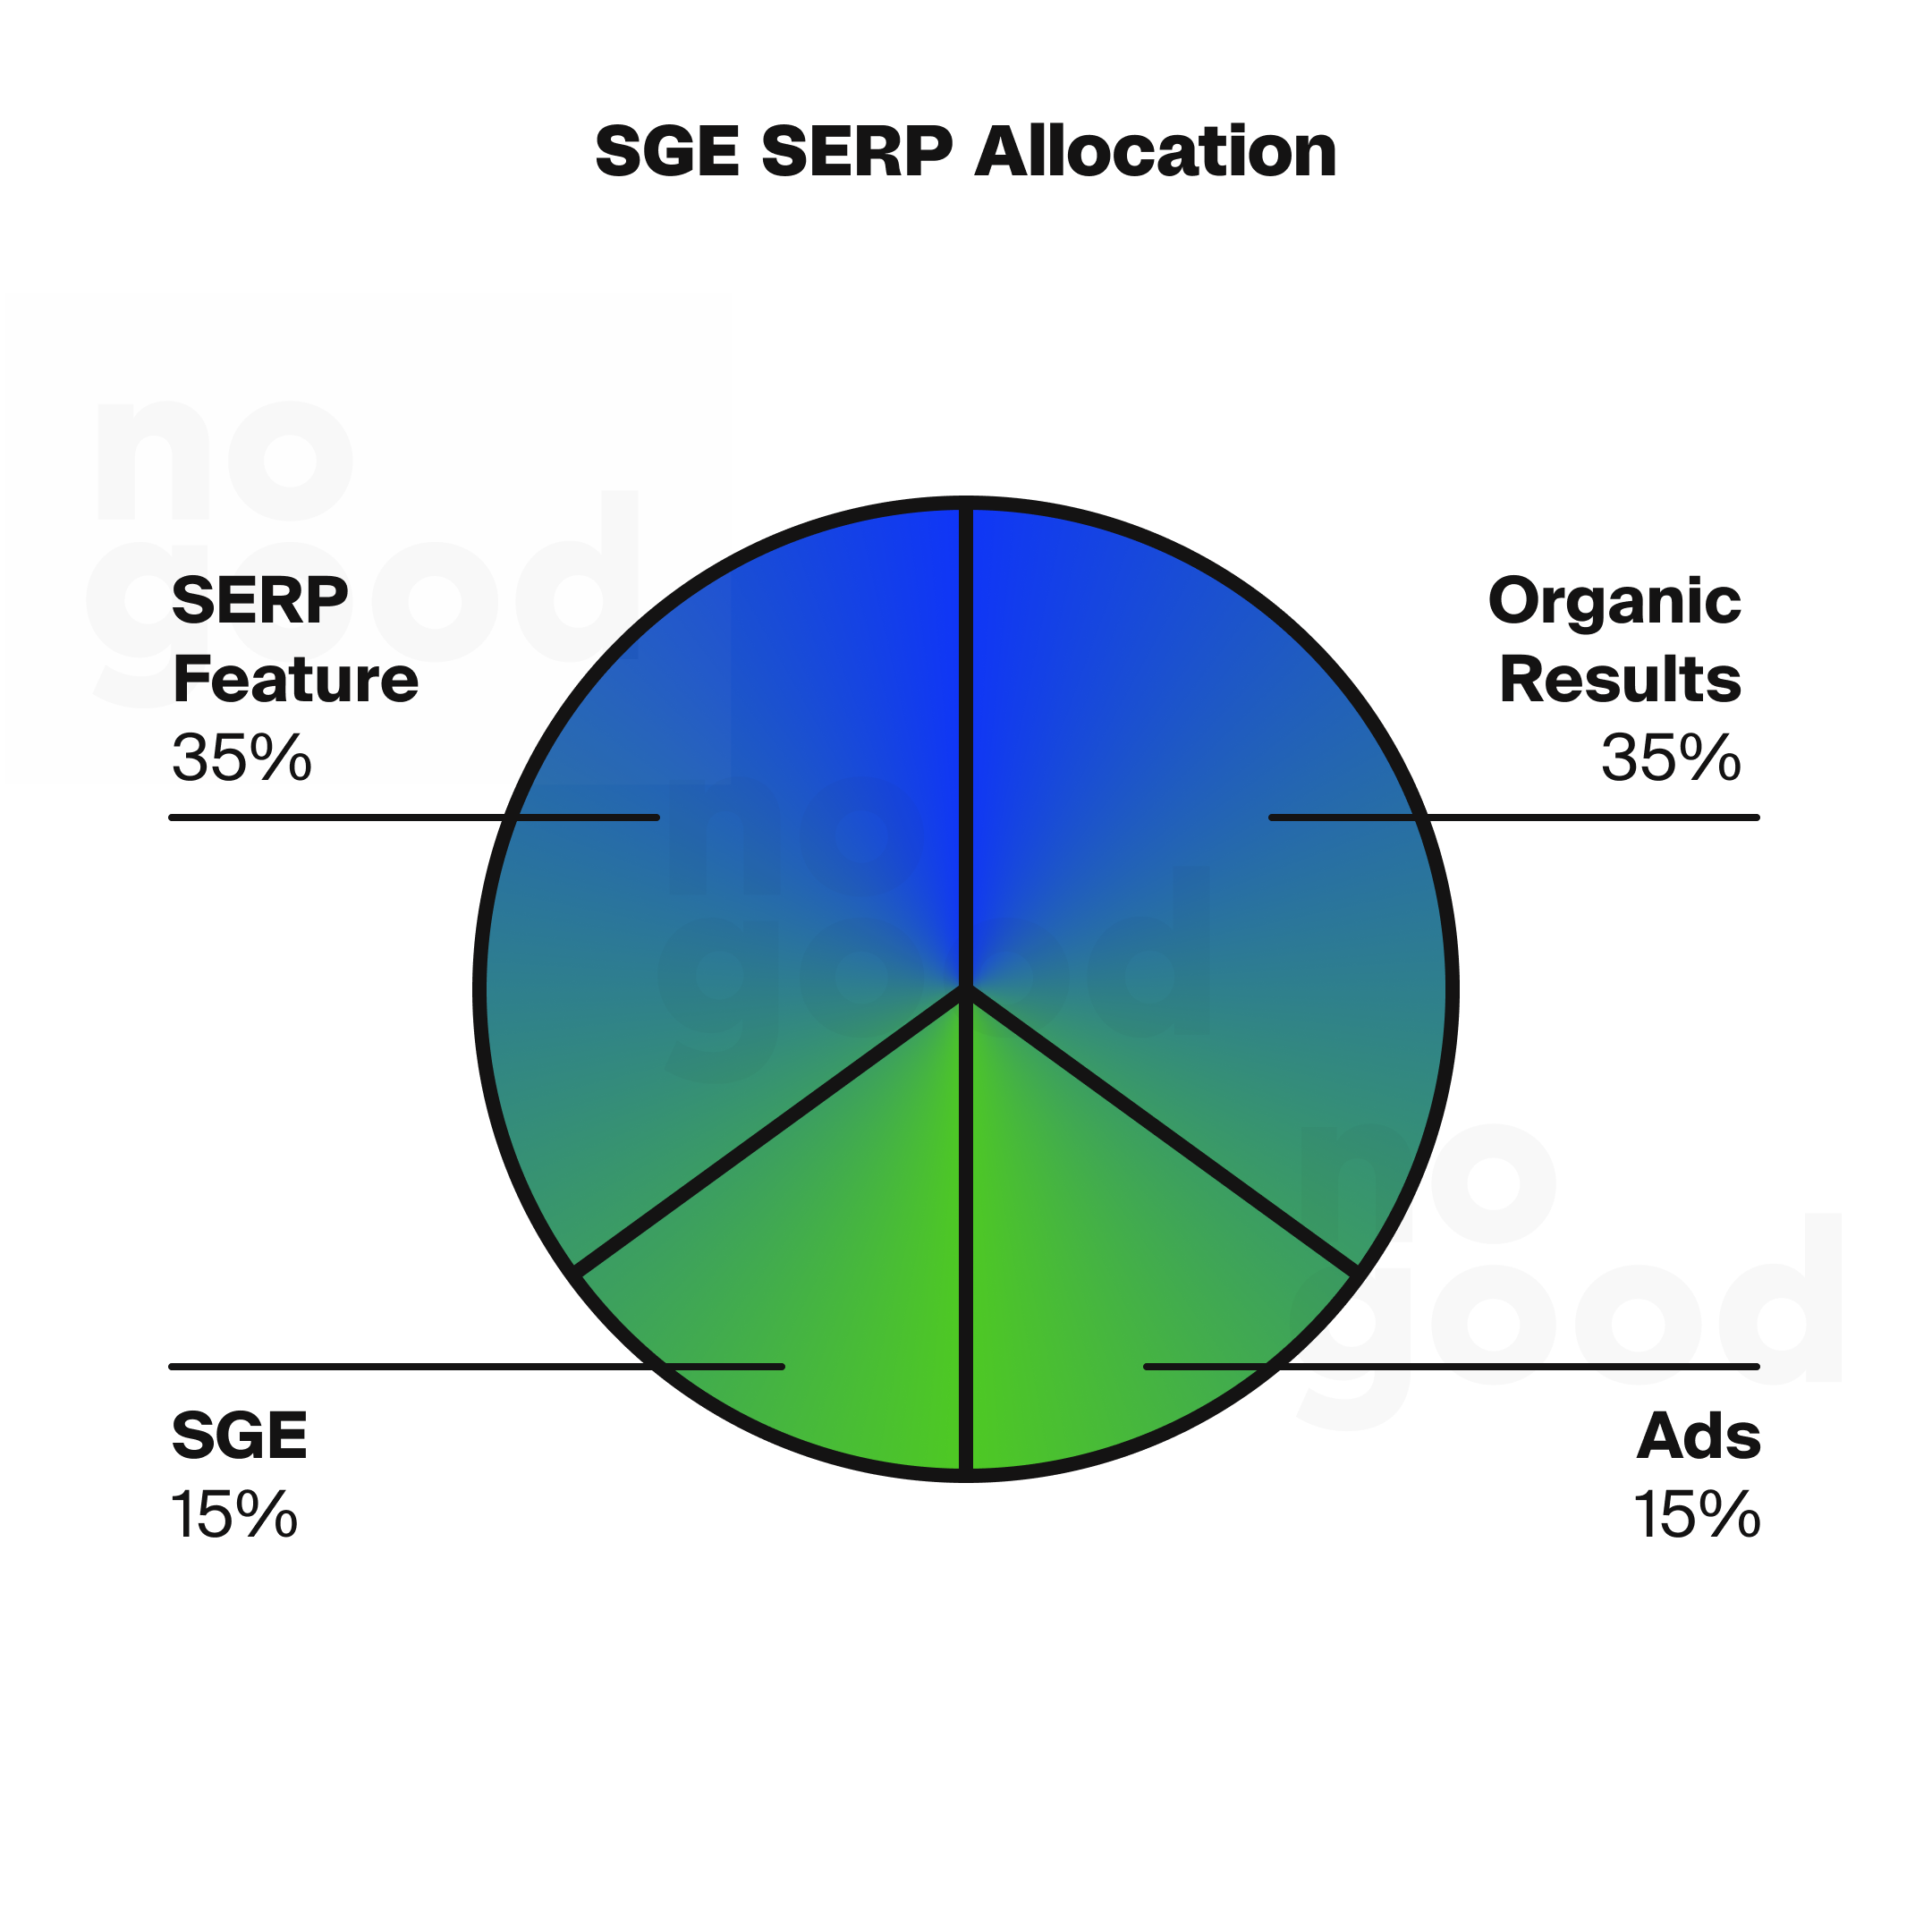 SGE SERP allocation